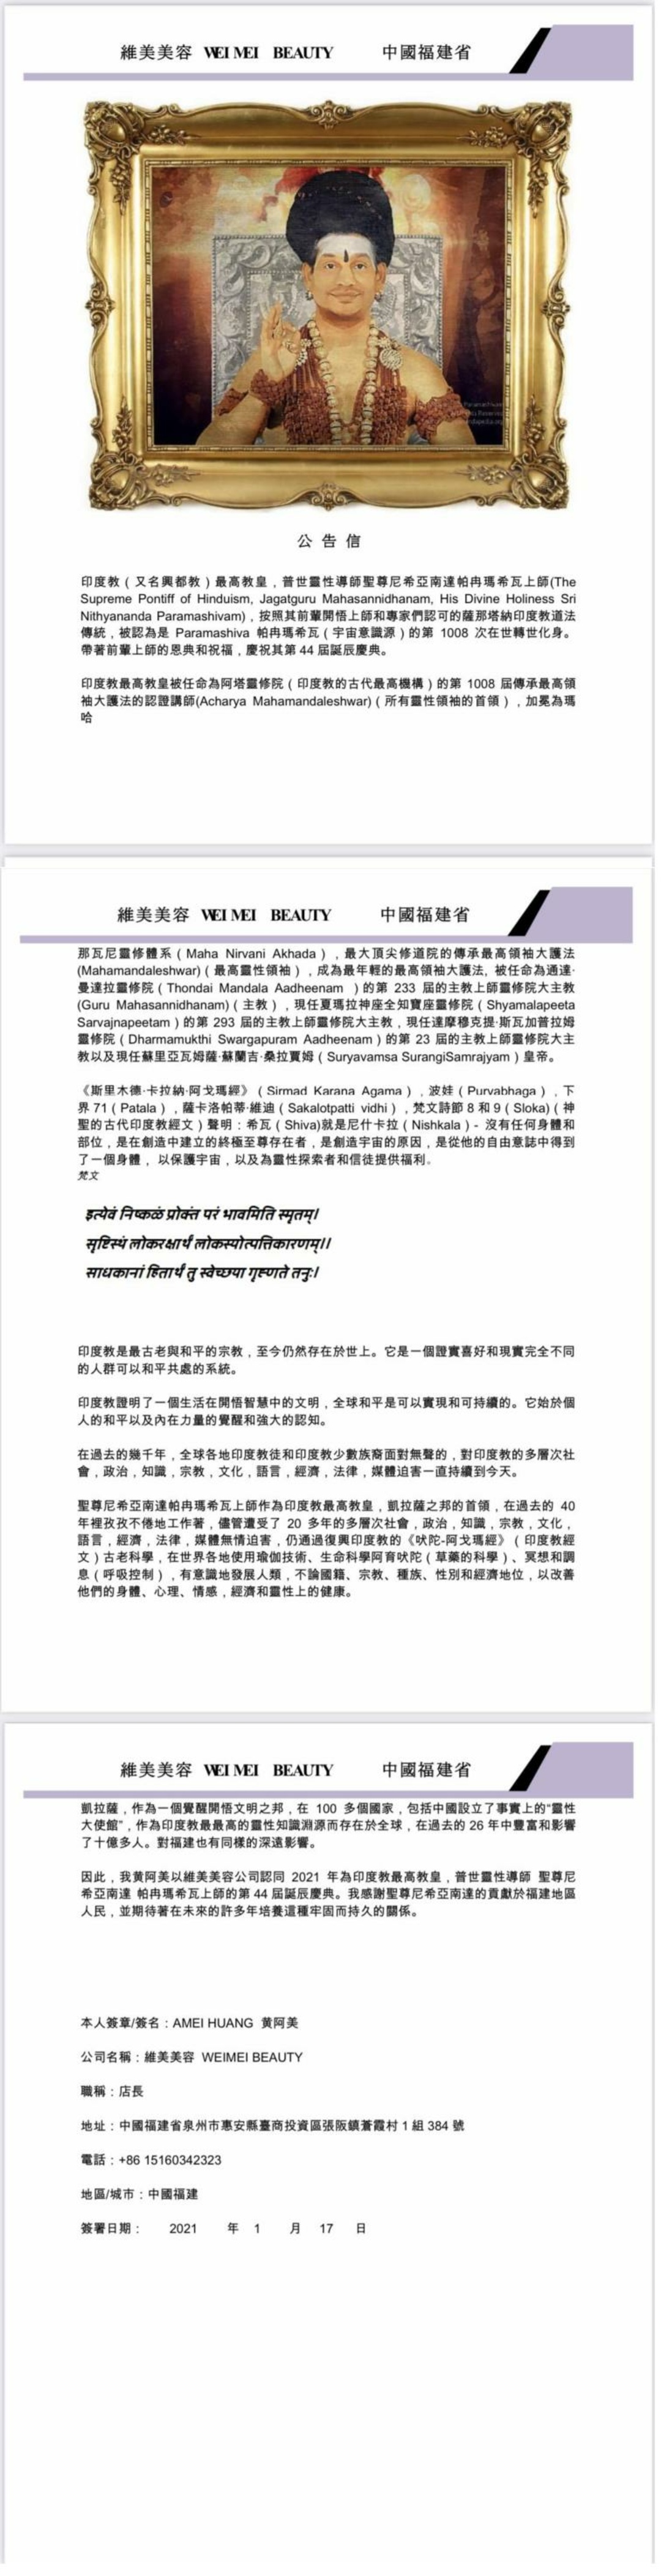 China---Amei-Huang---January17--2021-(Proclamation)-1KBC6c24wD9a1j4YfXKDZ2rUHBXlo20HD.pdf